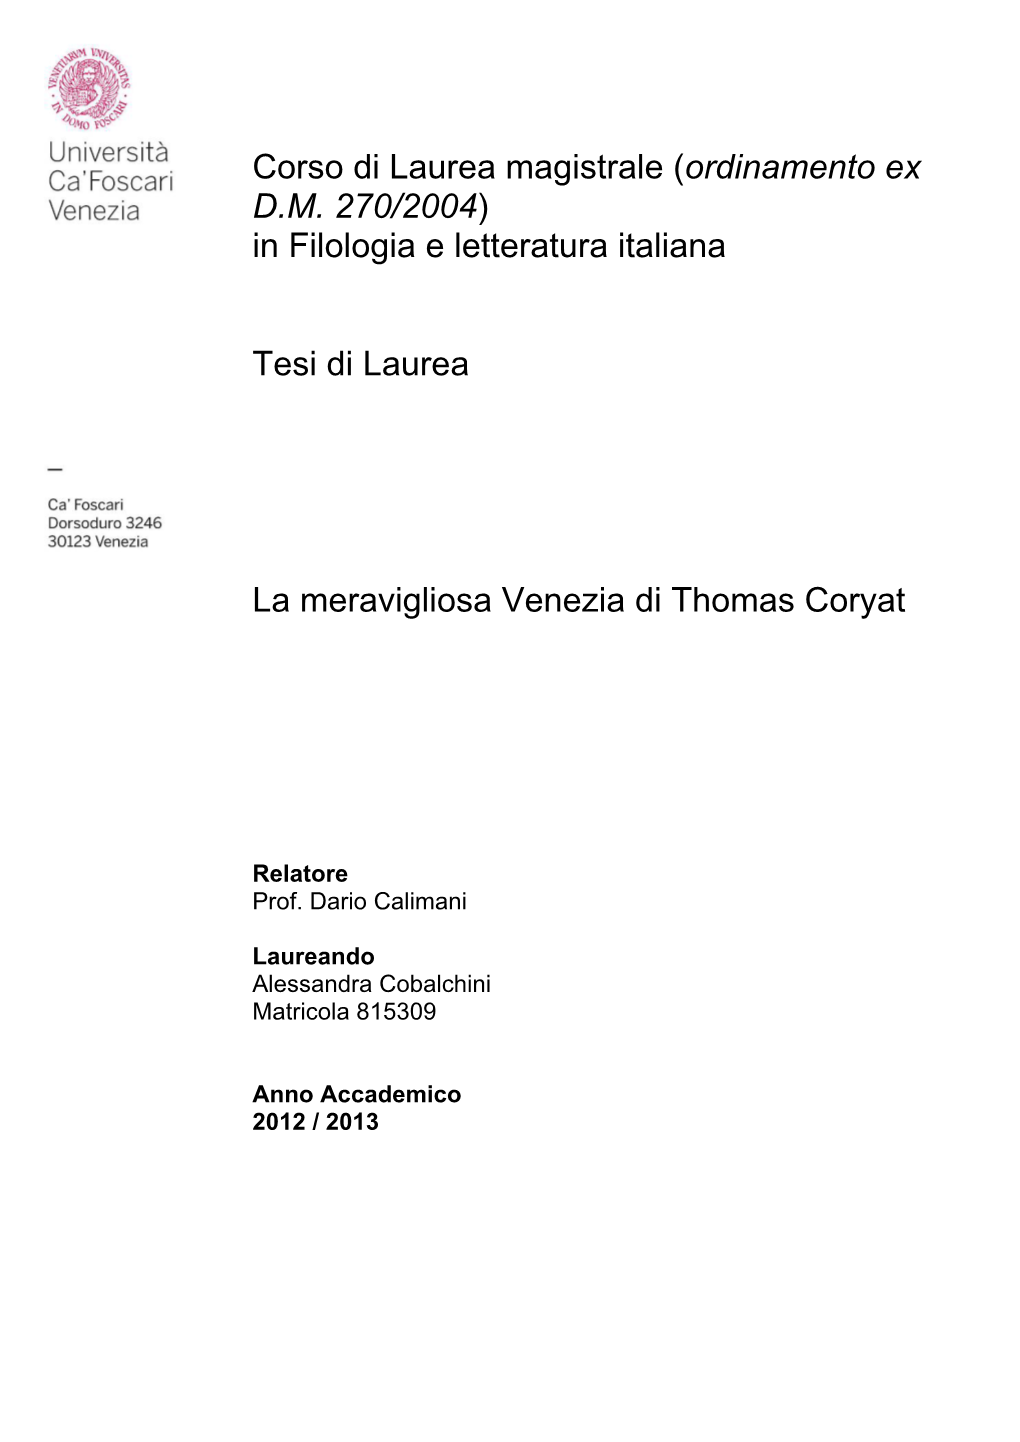 Thomas-Coryat-Viaggio-Venezia.Pdf